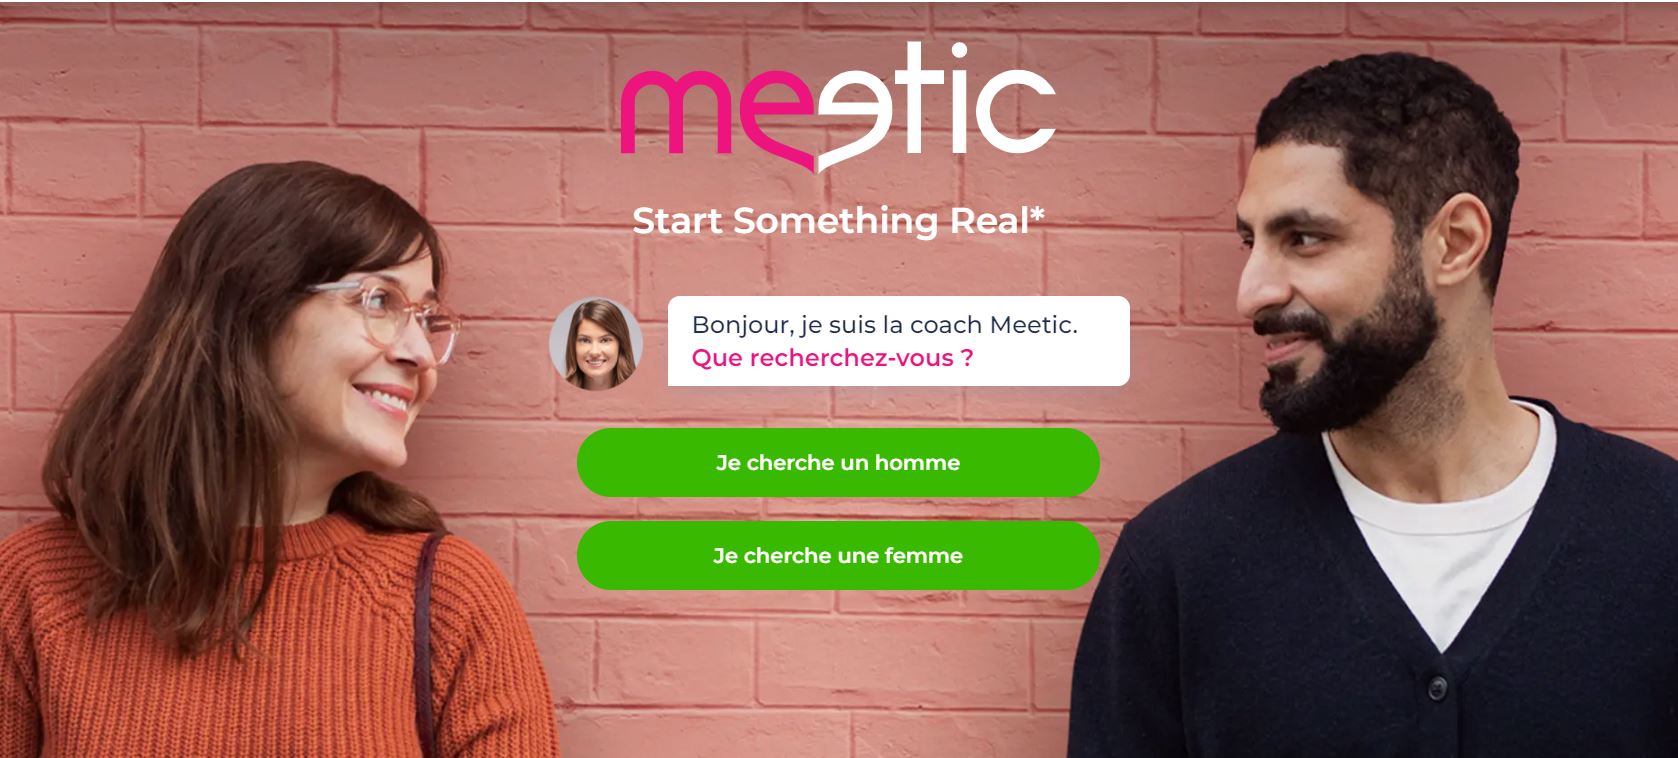 www.meetic.fr site de rencontre gratuit